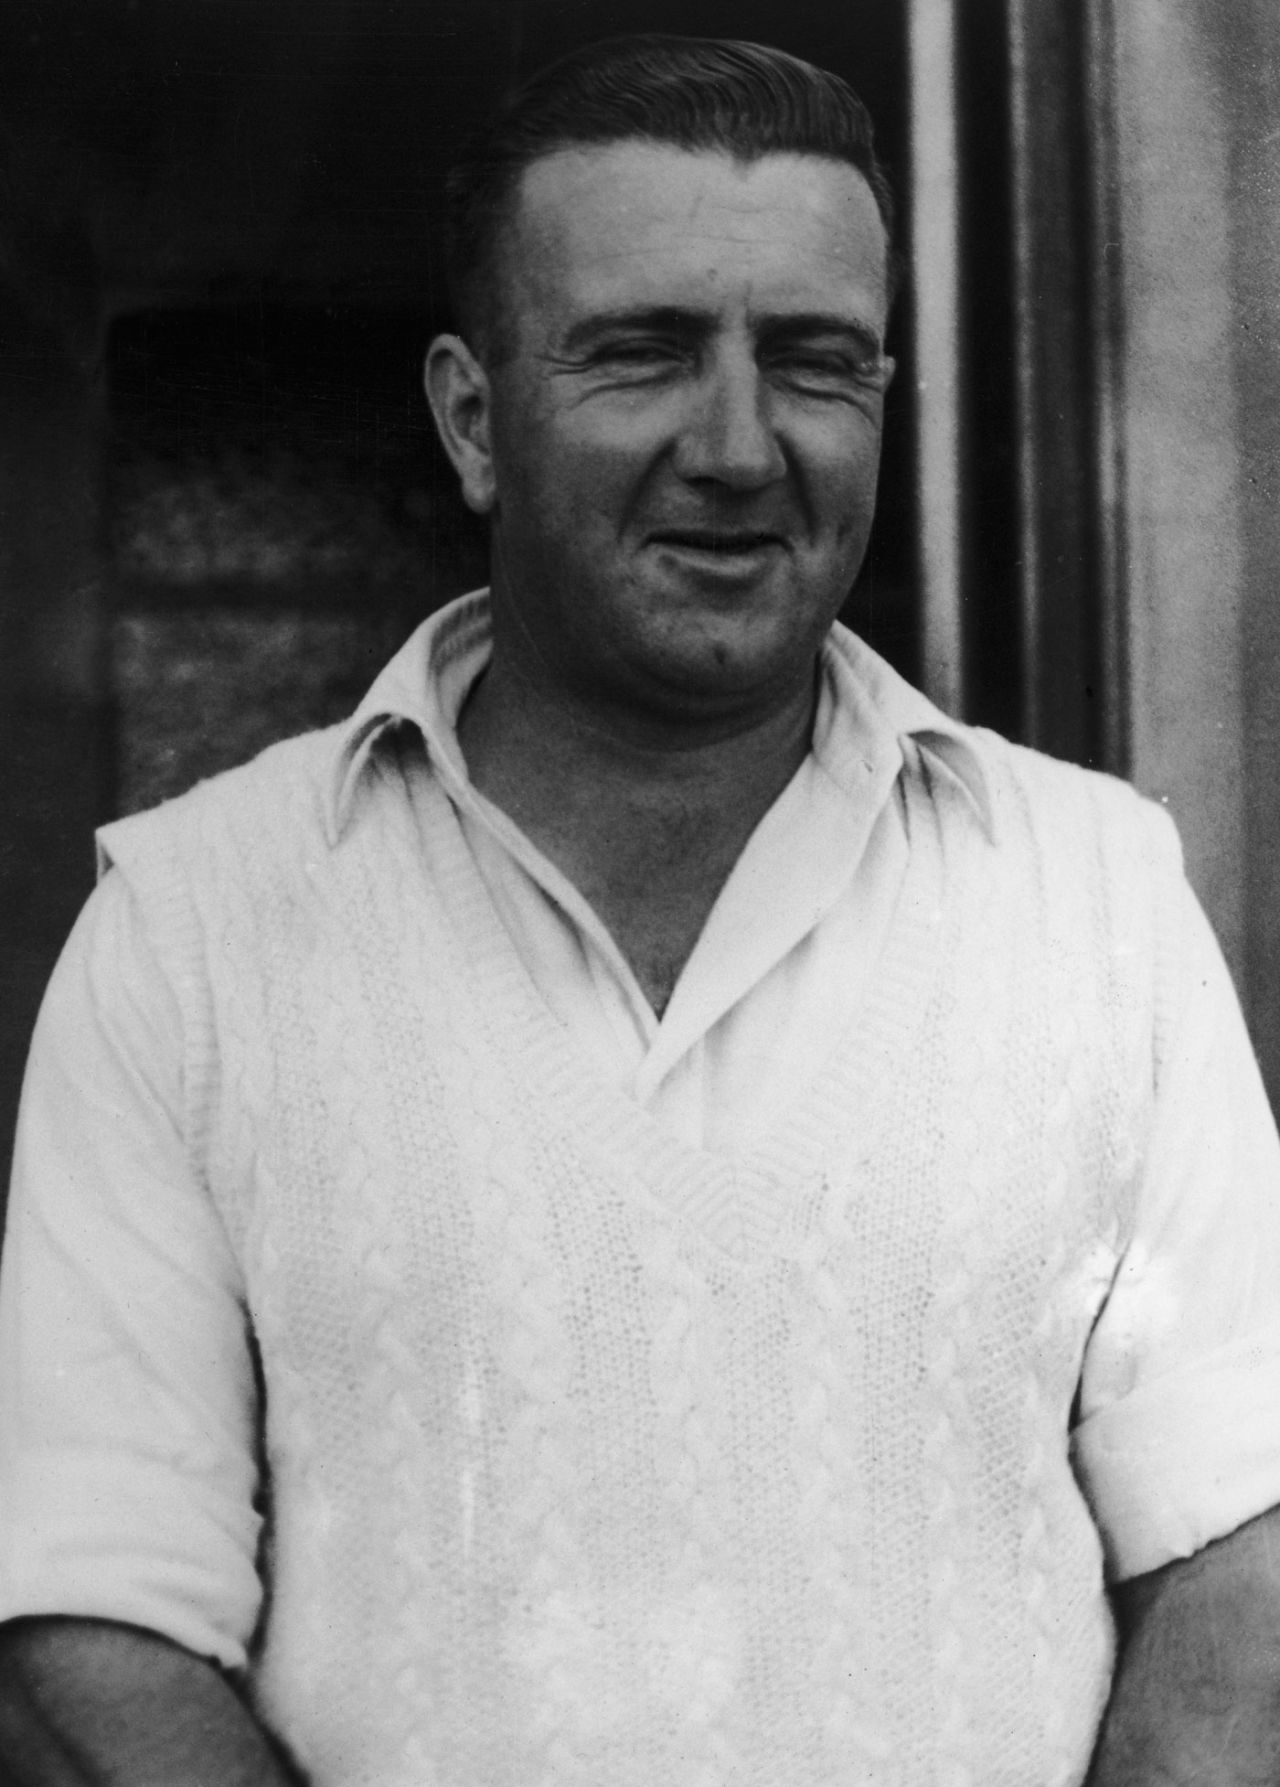 Jack Moroney, player portrait, November 30, 1950